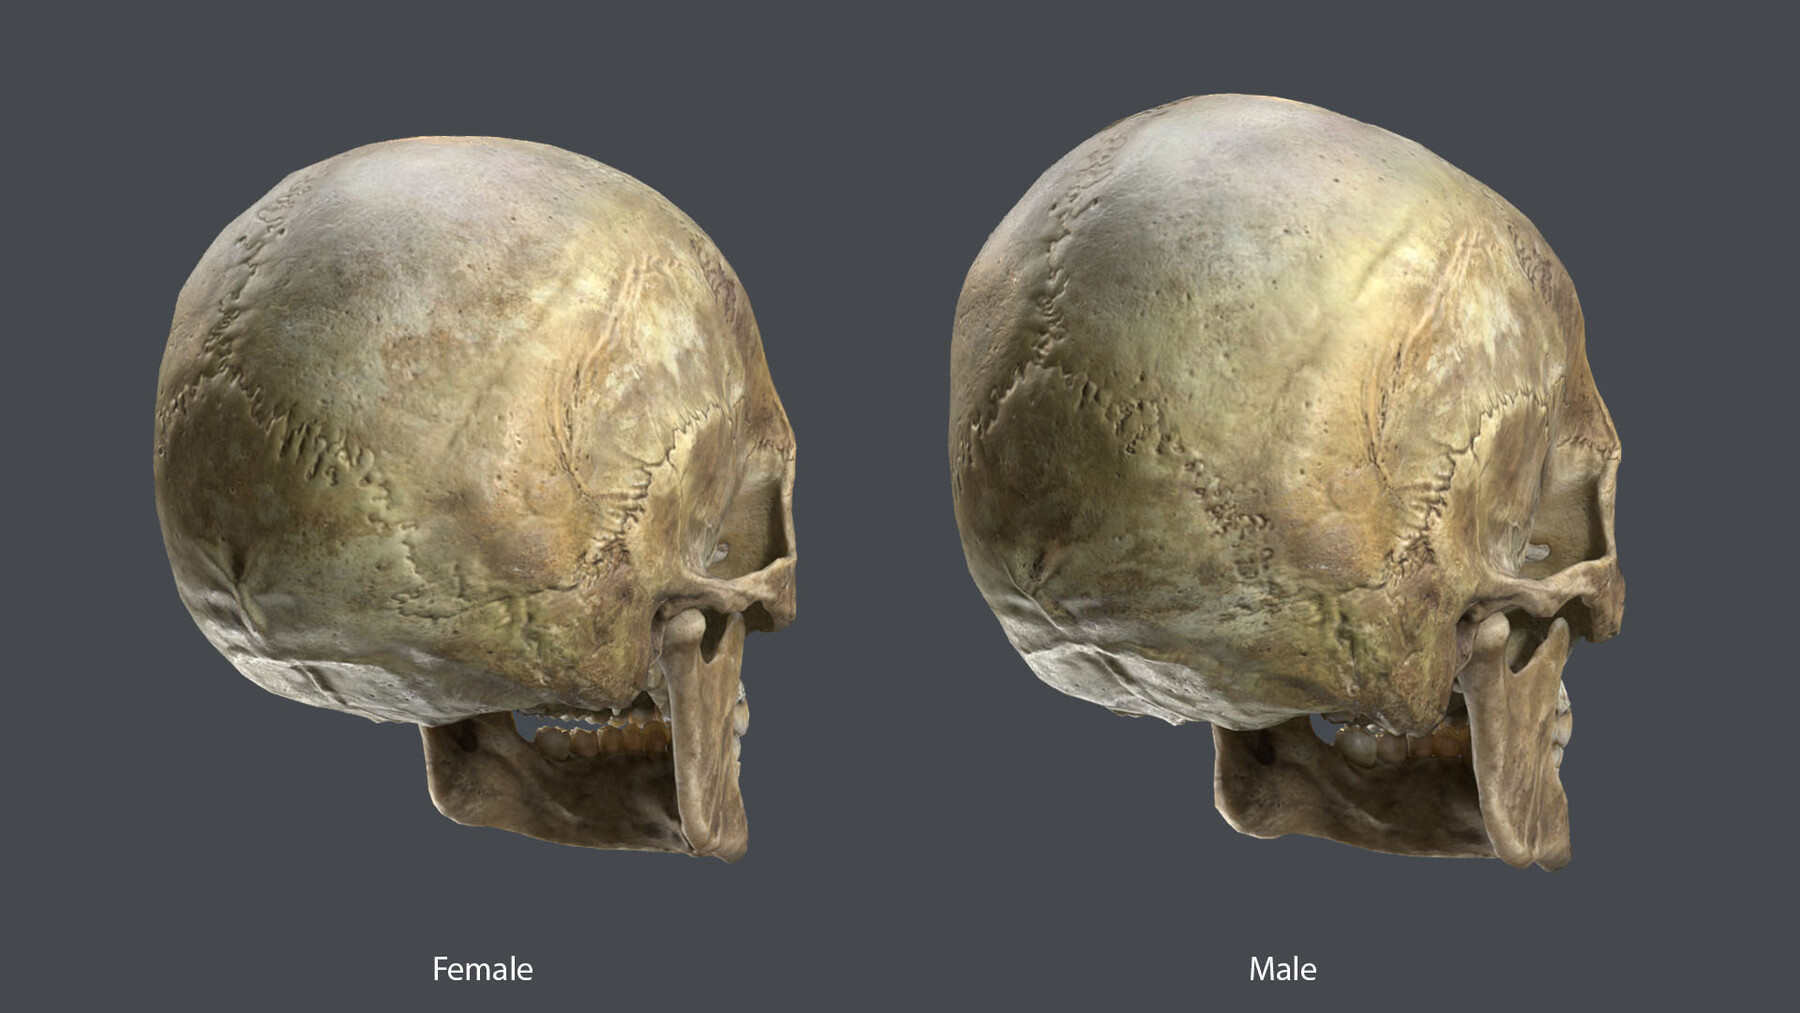 Difference between warrior skull and nerd skull. #attractive